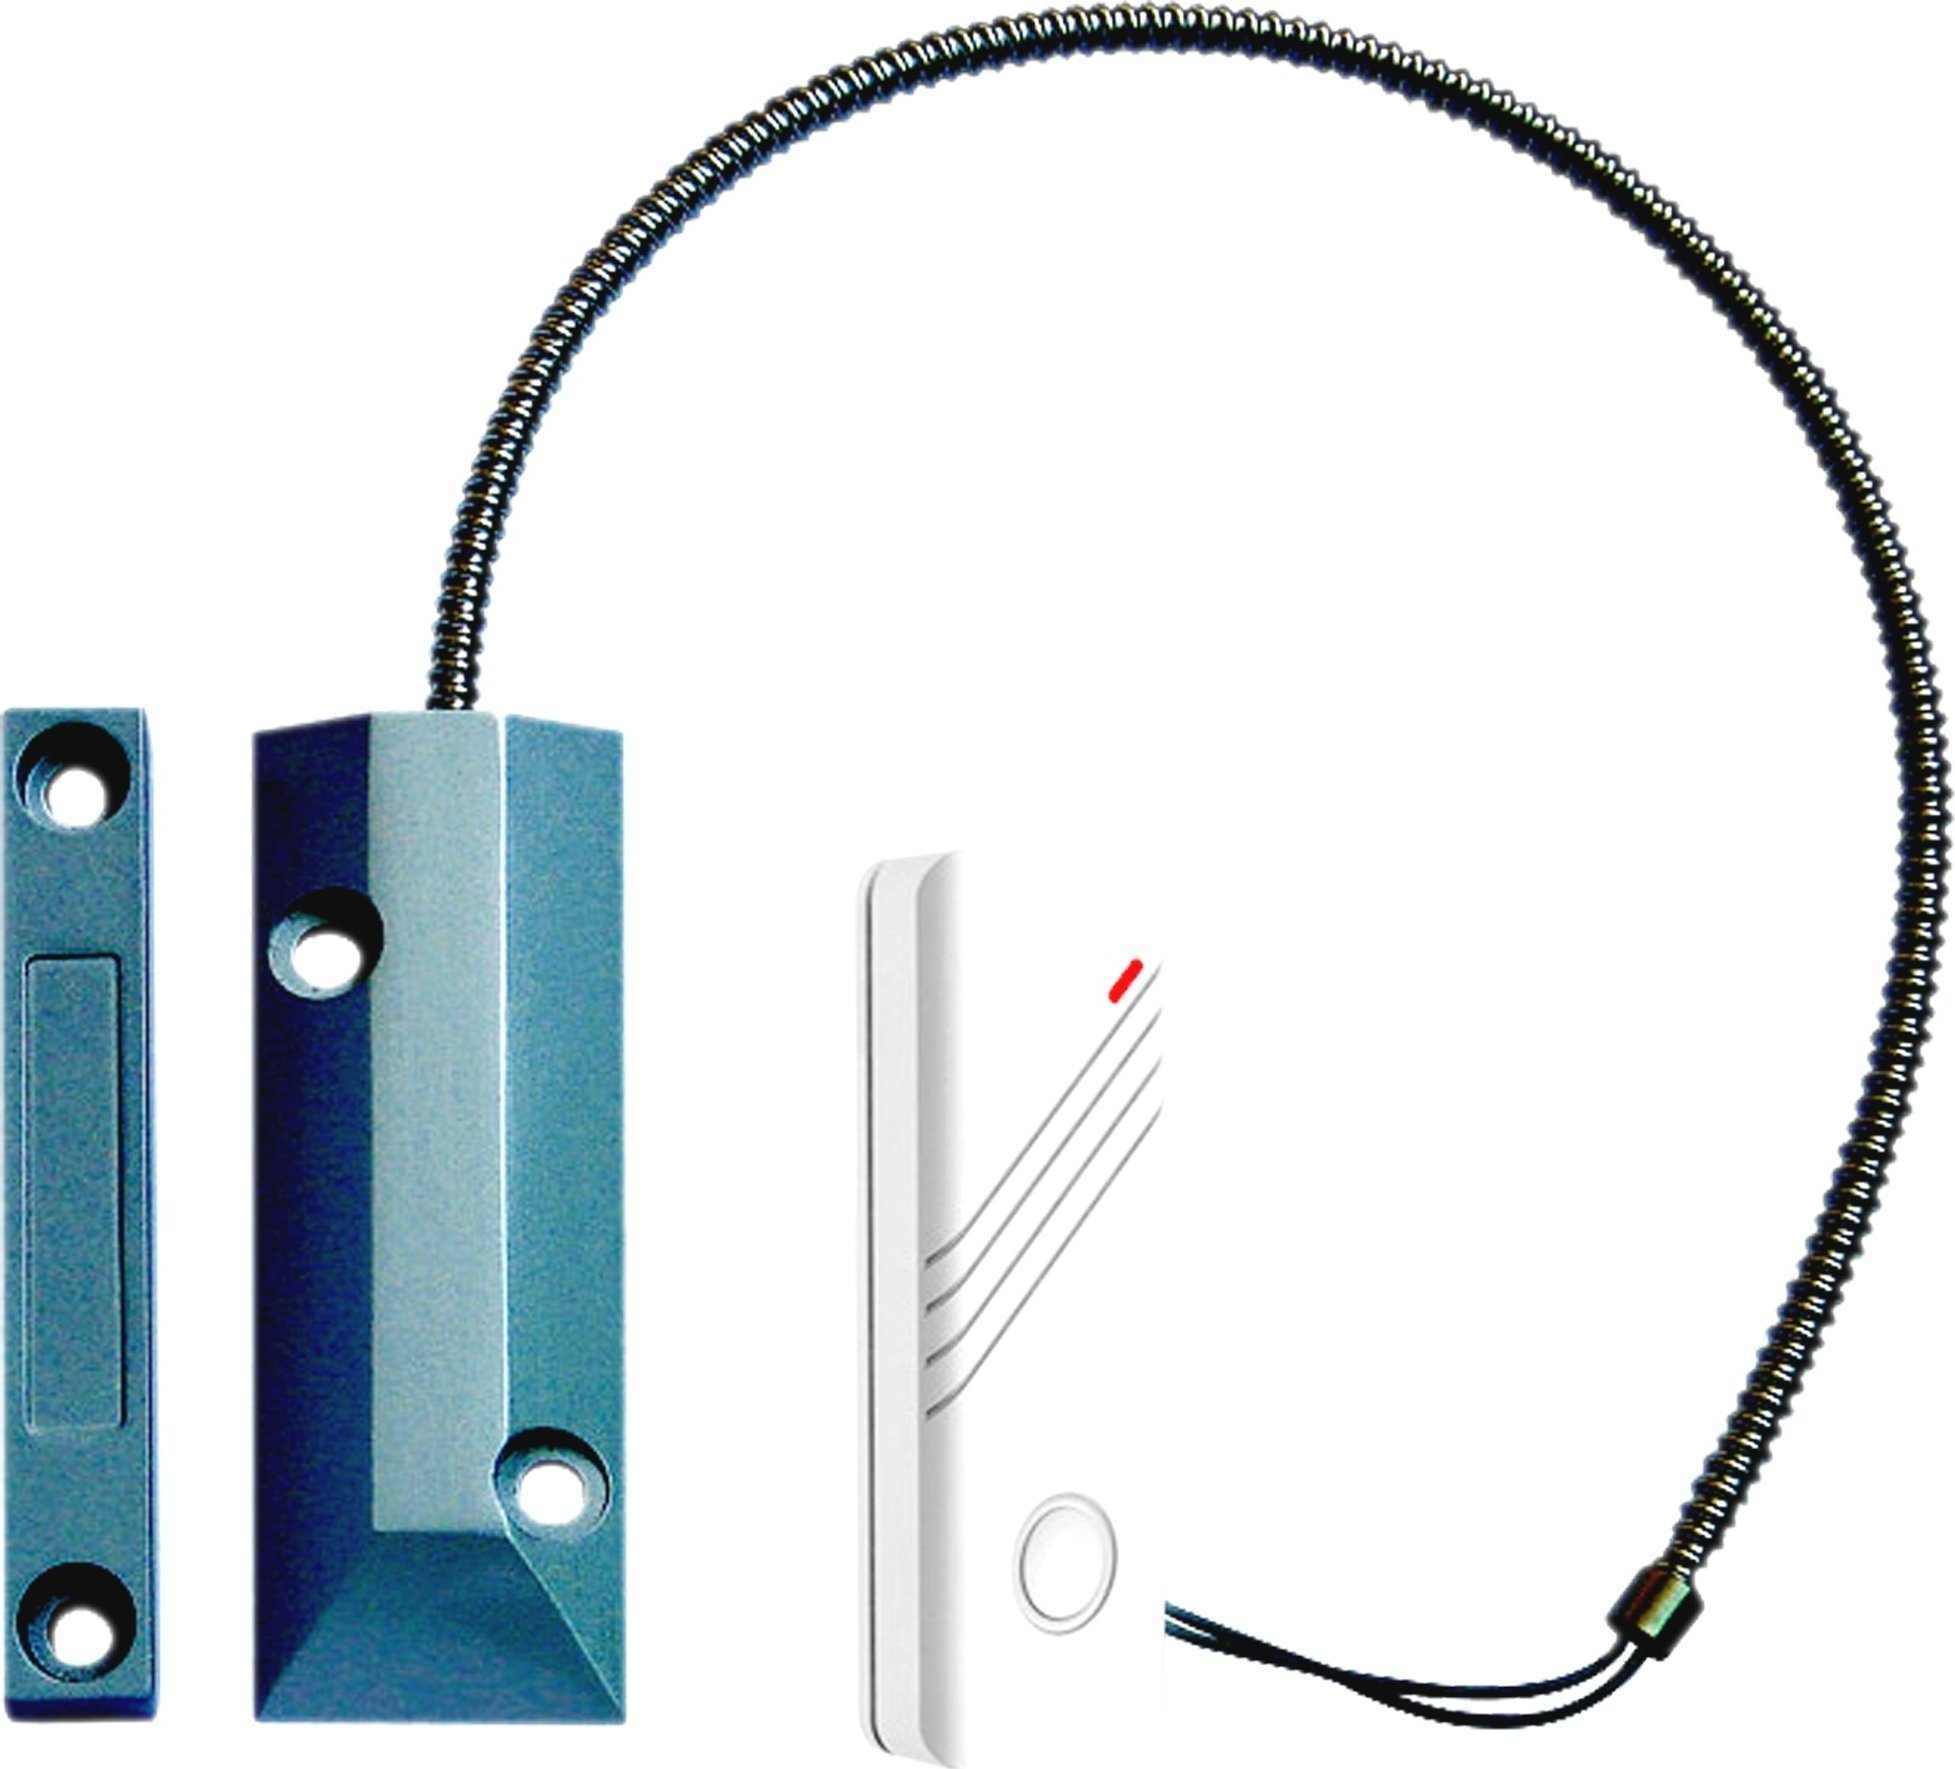 IGET SECURITATE P21 Bezdrátový magnetický senzor železné dveře pro / ferestre / k Vrata alarma M2b, TIPAR při Otevření pro M2b